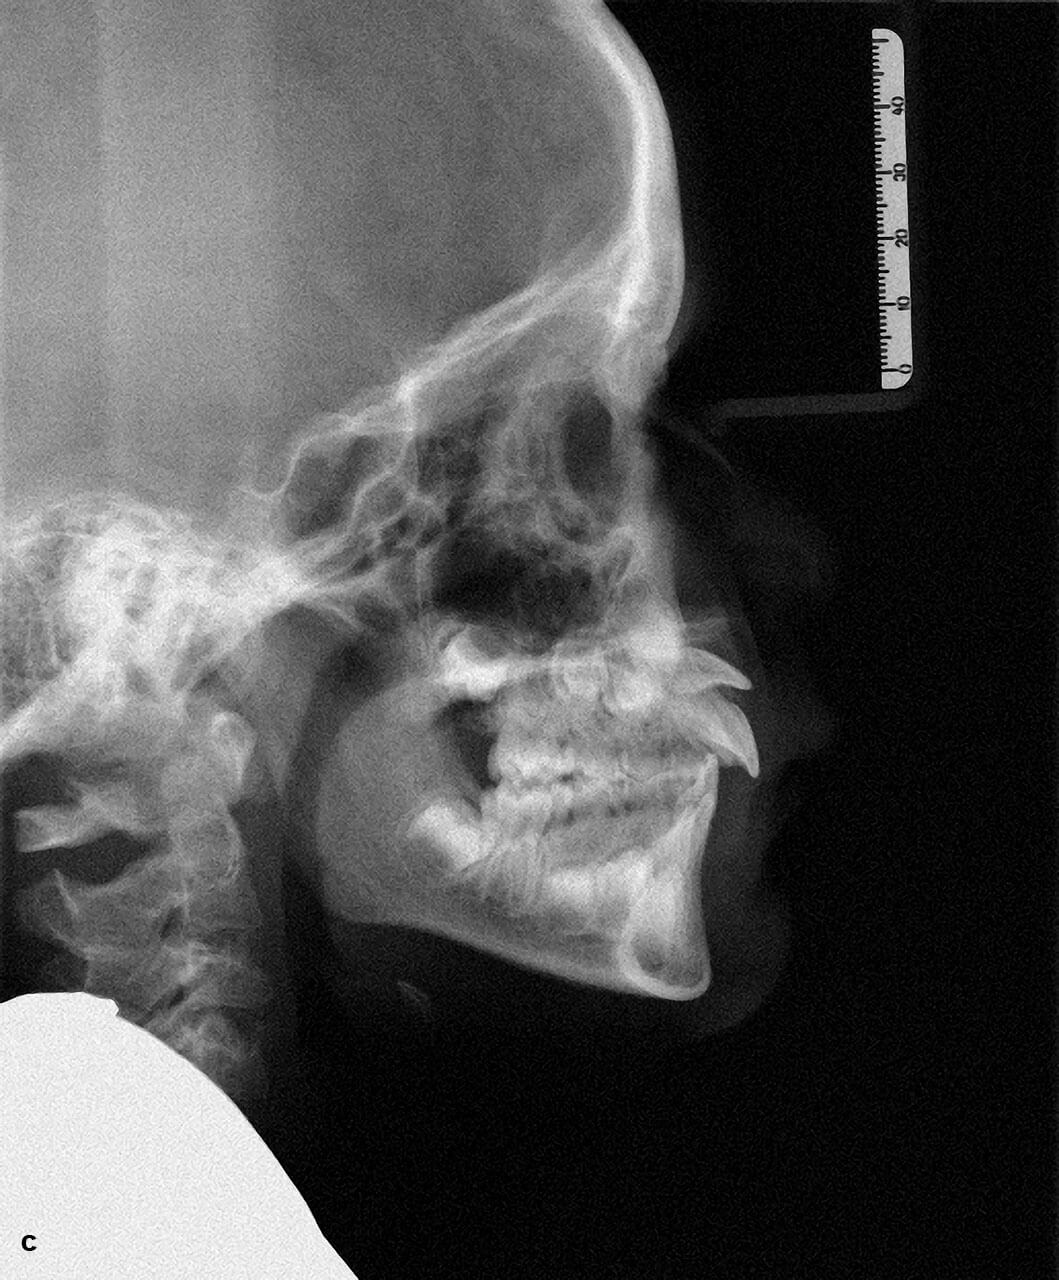 Abb. 5a bis c Ausgangssituation bei einem Patienten mit Durchbruchsstörung an Zahn 21 nach Milchzahntrauma, 
klinisches Bild (a), OPG (b), FRS (c).